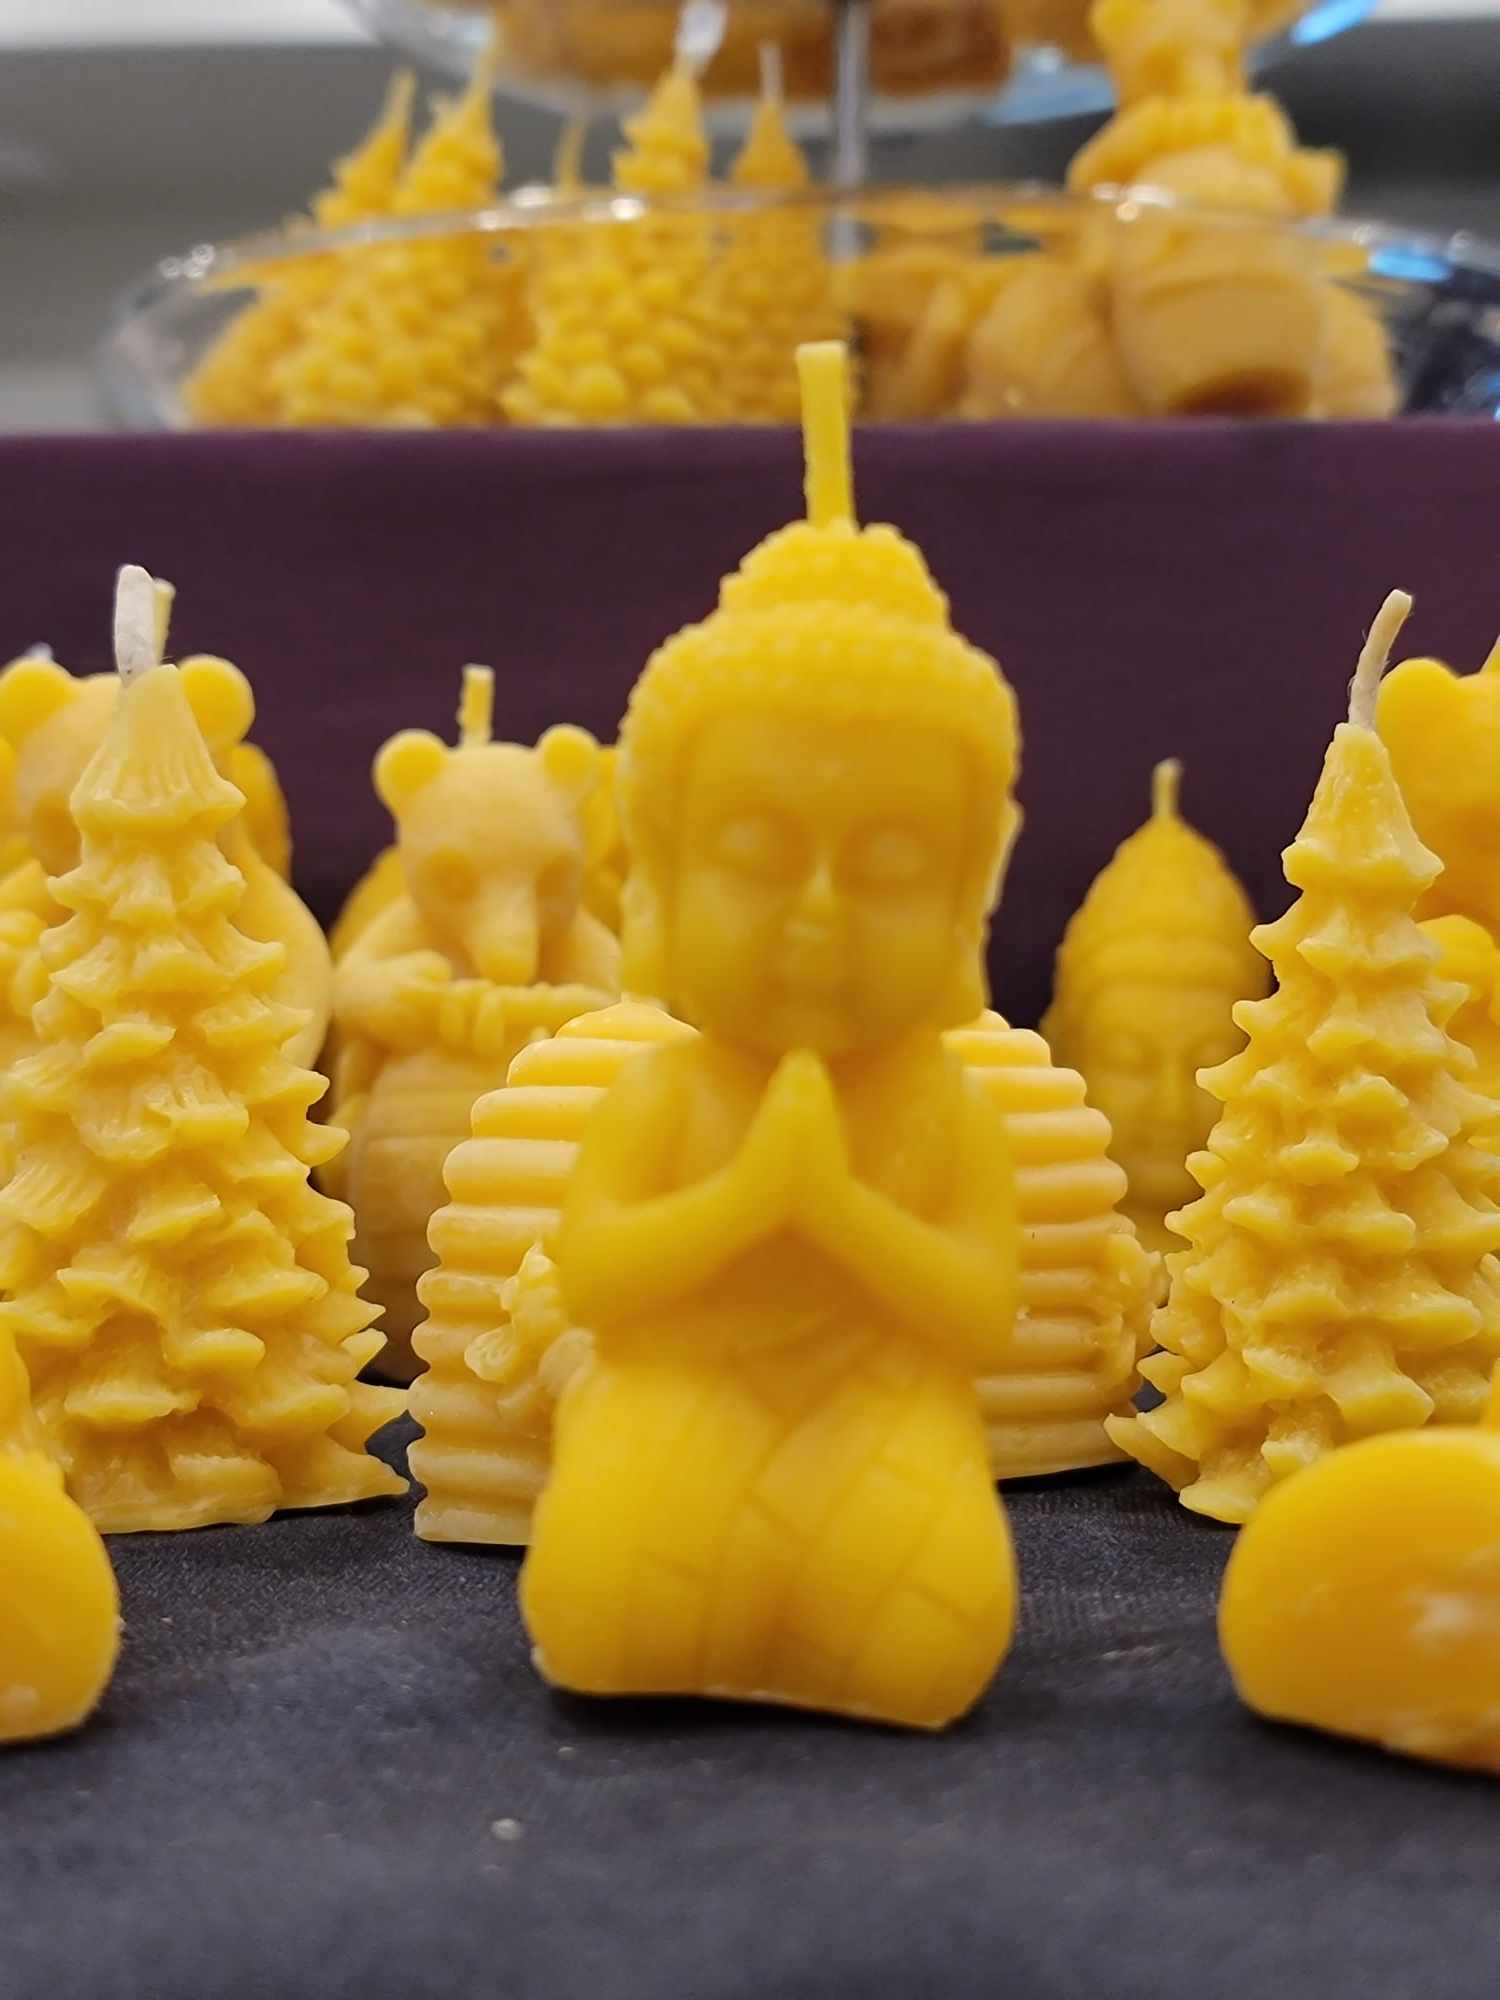 Une chandelle jaune en forme de bouddah agenouillé devant plusieurs autres modèles de chandelles jaunes